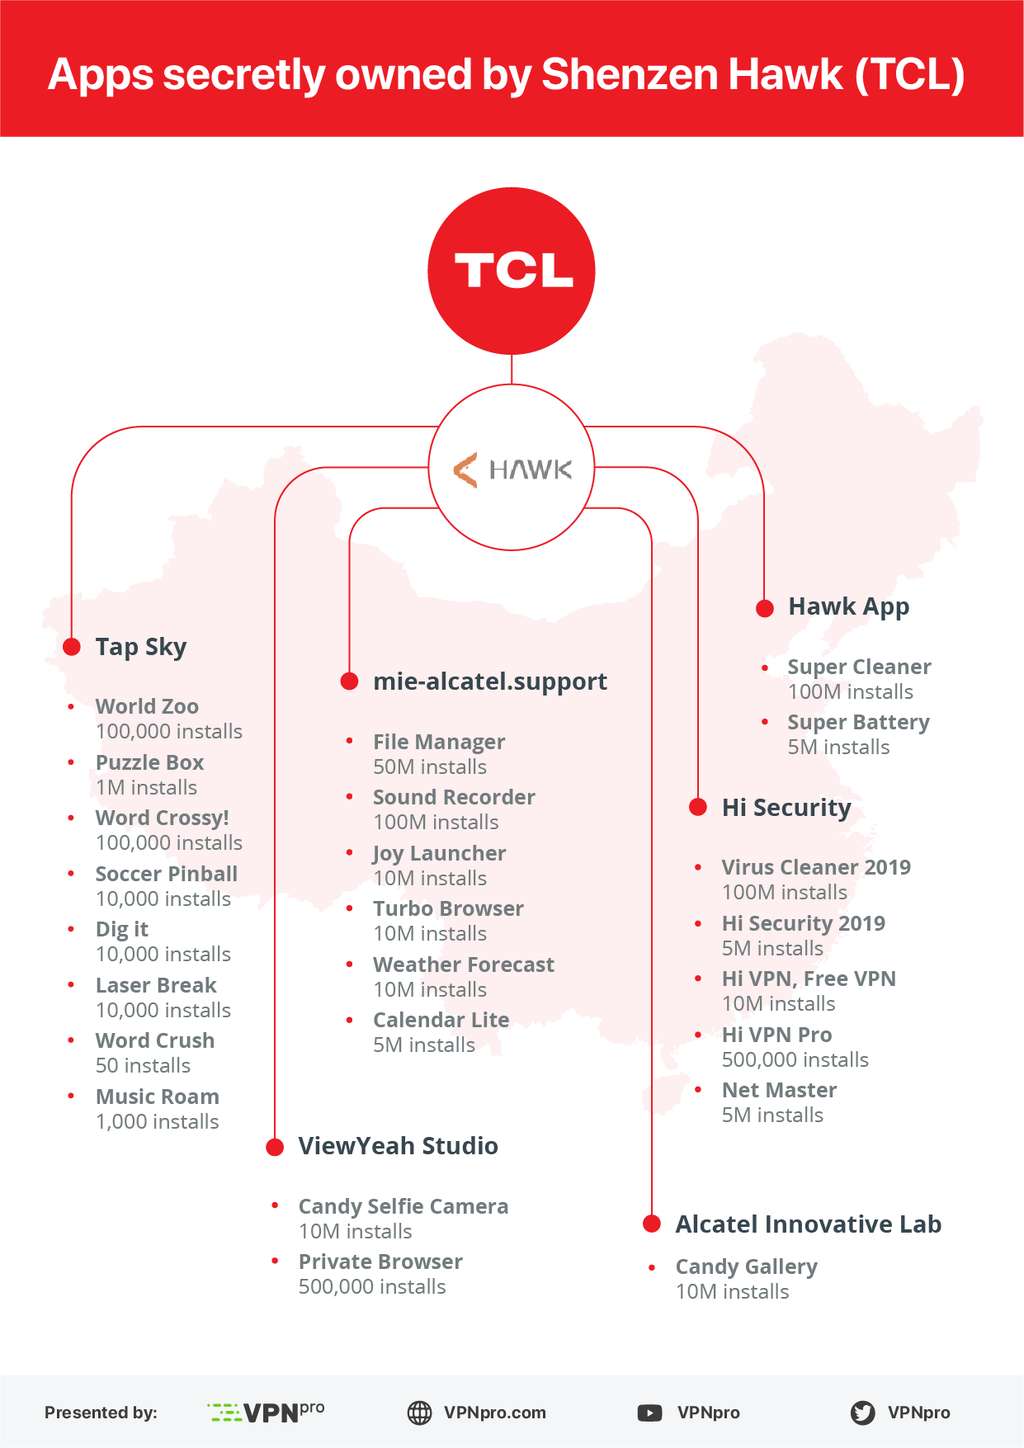 Voici la liste des 24 applications dont l'éditeur principal est Shenzhen Hawk Internet Co, une filiale de TCL. Pour chacune d'elles, le nombre d'installations est indiqué. © VPN Pro